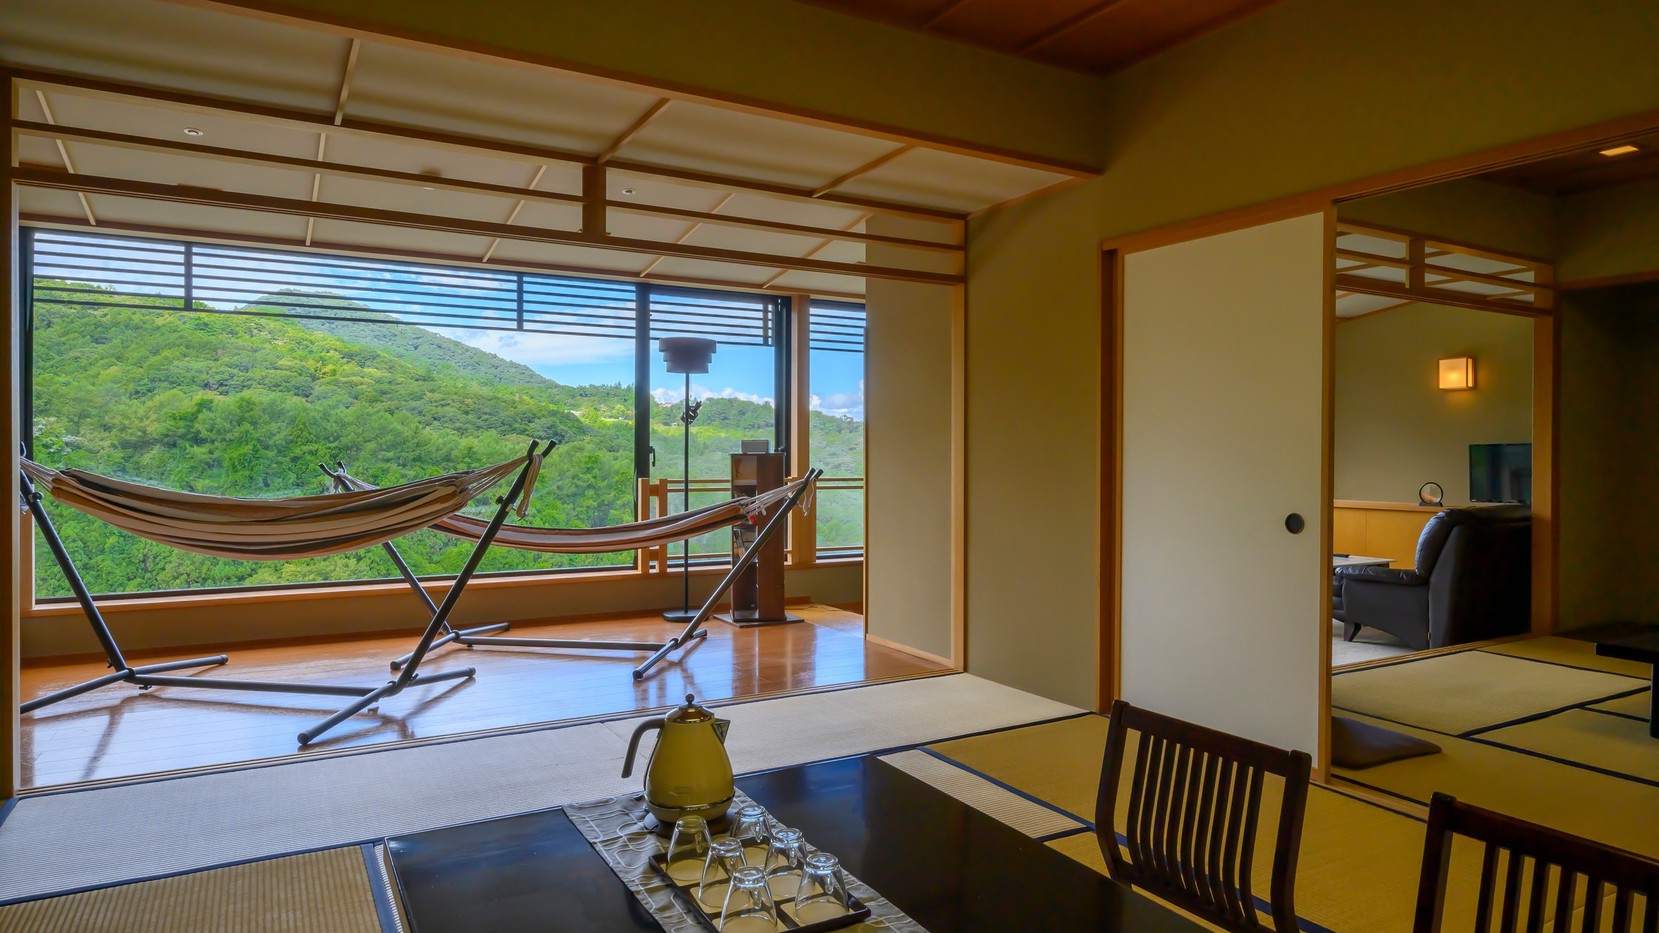 新客室「心寧-kokone-」最上階から伊香保の大自然を一望できます。